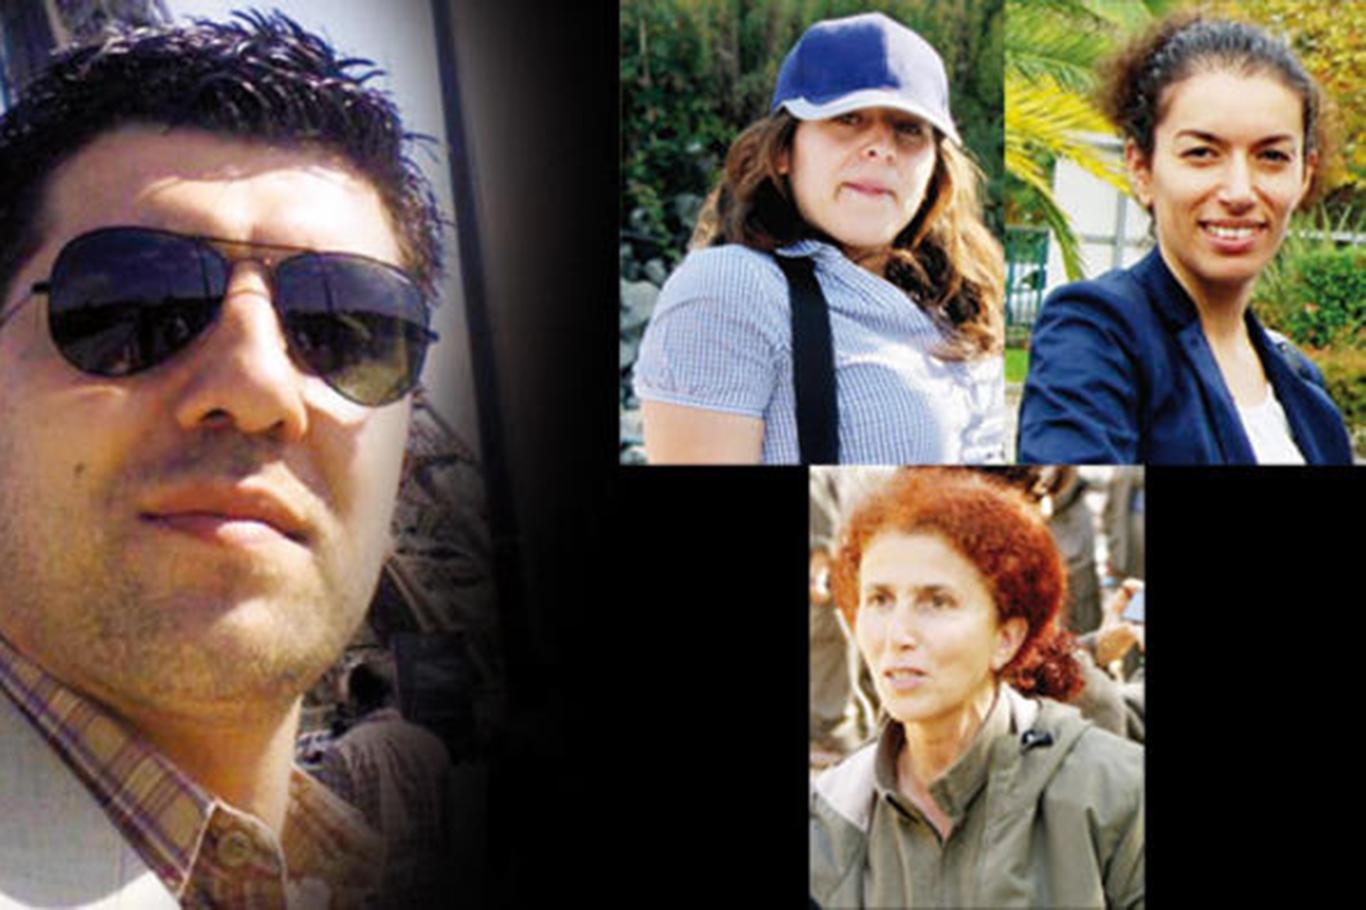 Fransa, PKK'li 3 kadının öldürülmesinde "MİT'in rolünü" araştıracak